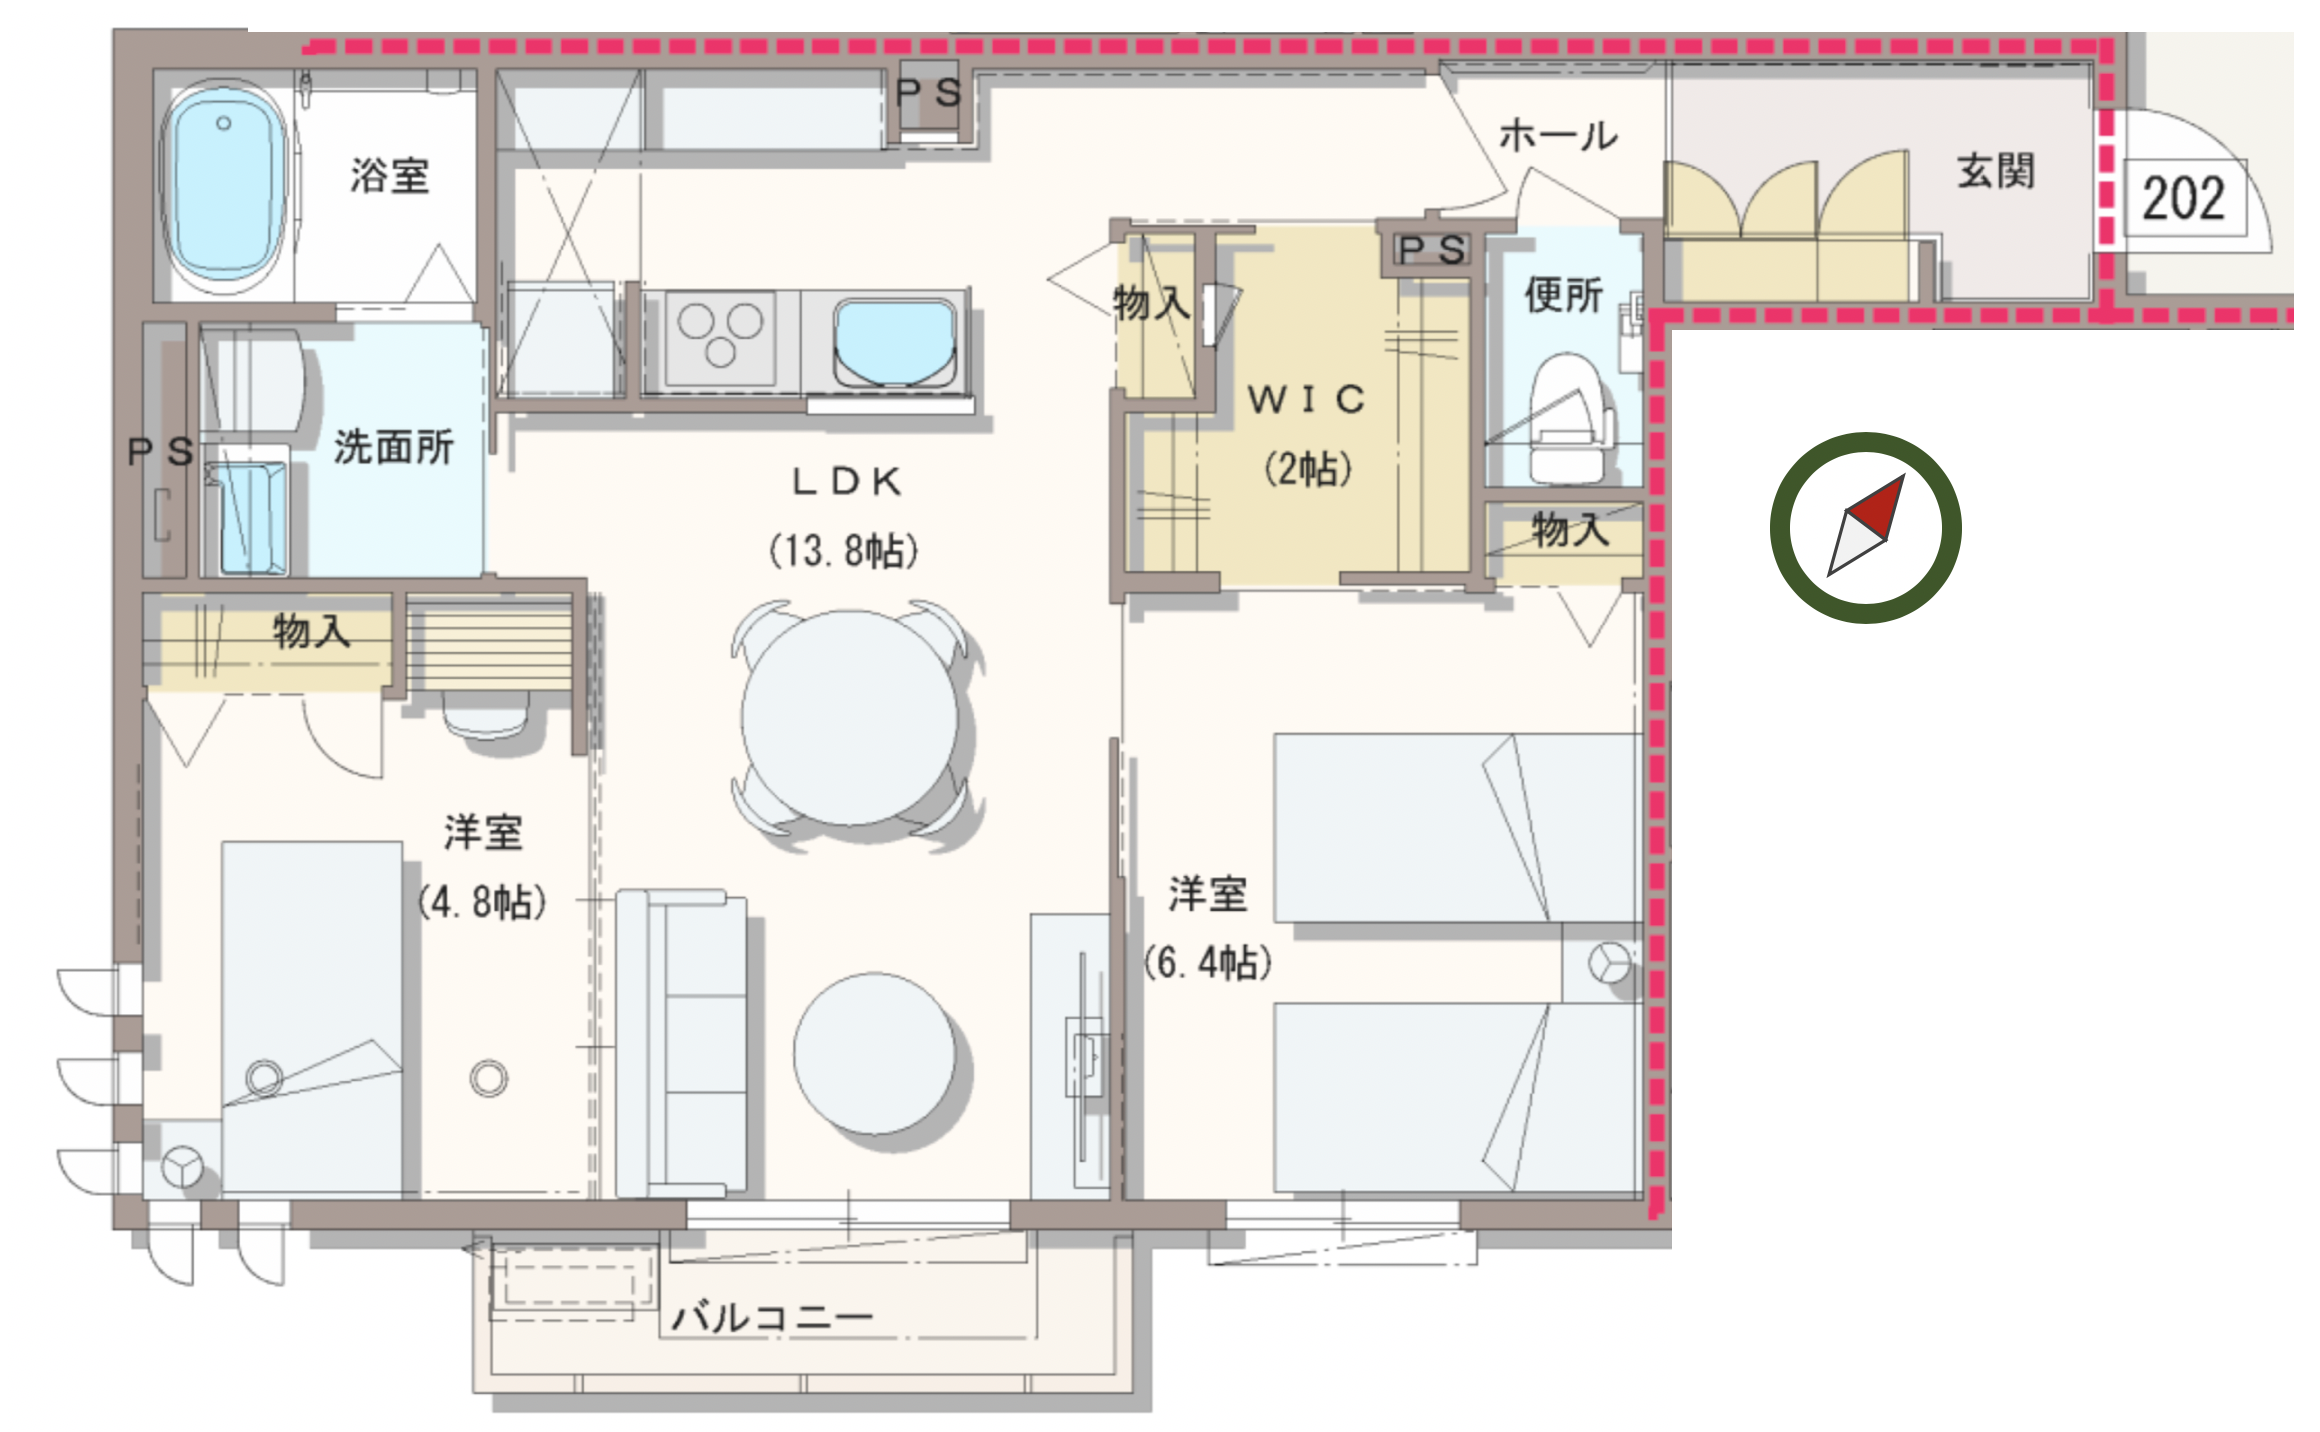 ご成約済み 2号室 2ldk 59平米 公式 Arbre陣屋 新築 2ldk 1ldk 埼玉県上尾市のデザイナー設計の賃貸マンション アパート